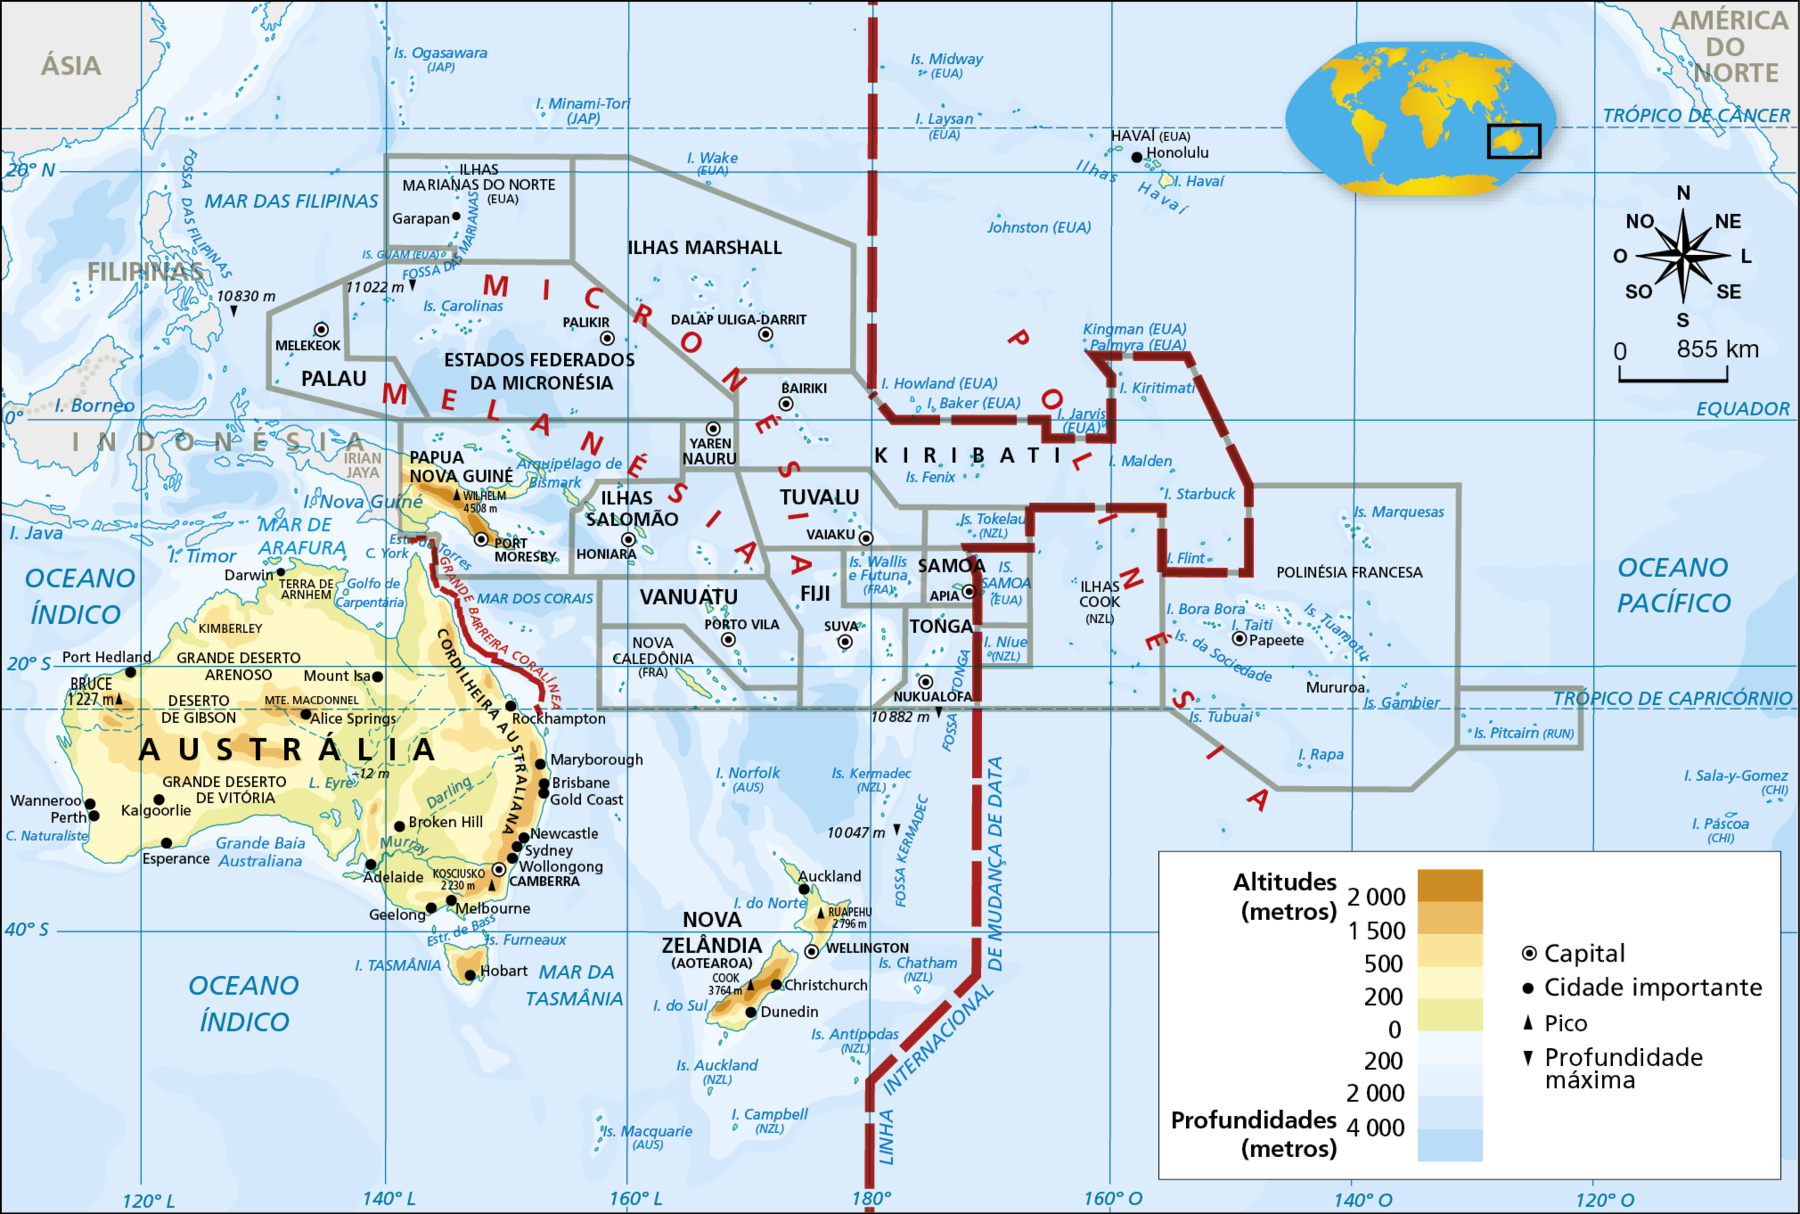 Mapa. Oceania: físico e político. Mapa mostrando as diferentes altitudes e os picos da Oceania. As altitudes mais elevadas estão representas em marrom escuro, enquanto as menos elevadas estão em verde. As altitudes mais elevadas, de 2.000 metros ou mais, estão na Papua Nova Guiné e na porção sul da Nova Zelândia. Altitudes entre 1.500 a 2.000 metros abrangem a Cordilheira Australiana, no extremo leste da Austrália. As altitudes que variam entre 500 metros e 1.500 metros, estão na Papua Nova Guiné, na Nova Zelândia e na costa leste e interior da Austrália. Áreas com altitudes entre 200 e 500 metros de altitude ocorrem na porção oeste e interior da Austrália, na Nova Zelândia e estreita faixa central de Papua Nova Guiné. As altitudes que variam entre 0 e 200 metros estão na faixa litorânea norte e áreas da porção leste da Austrália e sudoeste de Papua Nova Guiné. Os principais picos são: Wilhelm, com 4.508 metros de altitude, localizado em Papua Nova Guiné; Cook, com 3.764 metros de altitude, na porção da Nova Zelândia; Ruapehu, com 2.796 metros de altitude, no norte da Nova Zelândia; Kosciusko, com 2.230 metros, no sudeste da Austrália; Bruce, com 1.227 metros de altitude, na porção oeste da Austrália. Oceania político: Austrália (capital: Camberra); Nova Zelândia (capital: Wellington); Papua Nova Guiné (capital: Port Moresby). Micronésia: Ilhas Marshall (capital: Dalap Uliga-Darrit); Nauru (capital: Yaren); Estados Federados da Micronésia (capital: Palikir); Fiji (capital: Suva); Tuvalu (capital: Vaiaku). Melanésia: Palau (capital: Melekeok); Ilhas Salomão (capital: Honiara); Vanuatu (capital: Porto Vila). Polinésia: Kiribati (capital: Bairiki); Samoa (capital: Apia); Tonga (capital: Nukualofa); Polinésia Francesa (capital: Papeete); Ilhas Cook (Nova Zelândia). Na parte direita, rosa dos ventos e escala de 0 a 855 quilômetros.